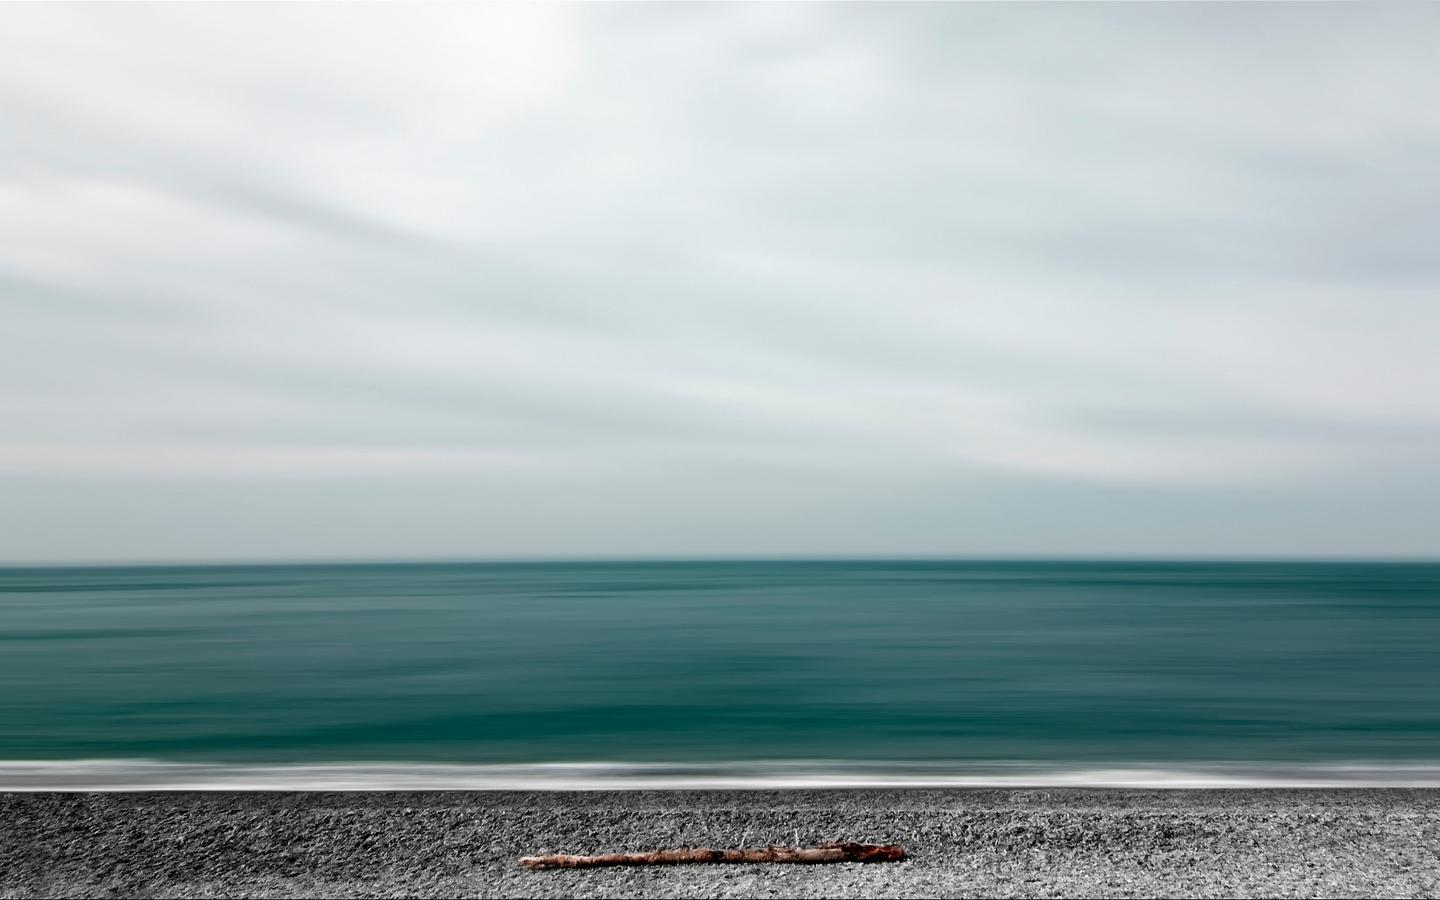 Download wallpaper 1440x900 sea, shore, minimalism